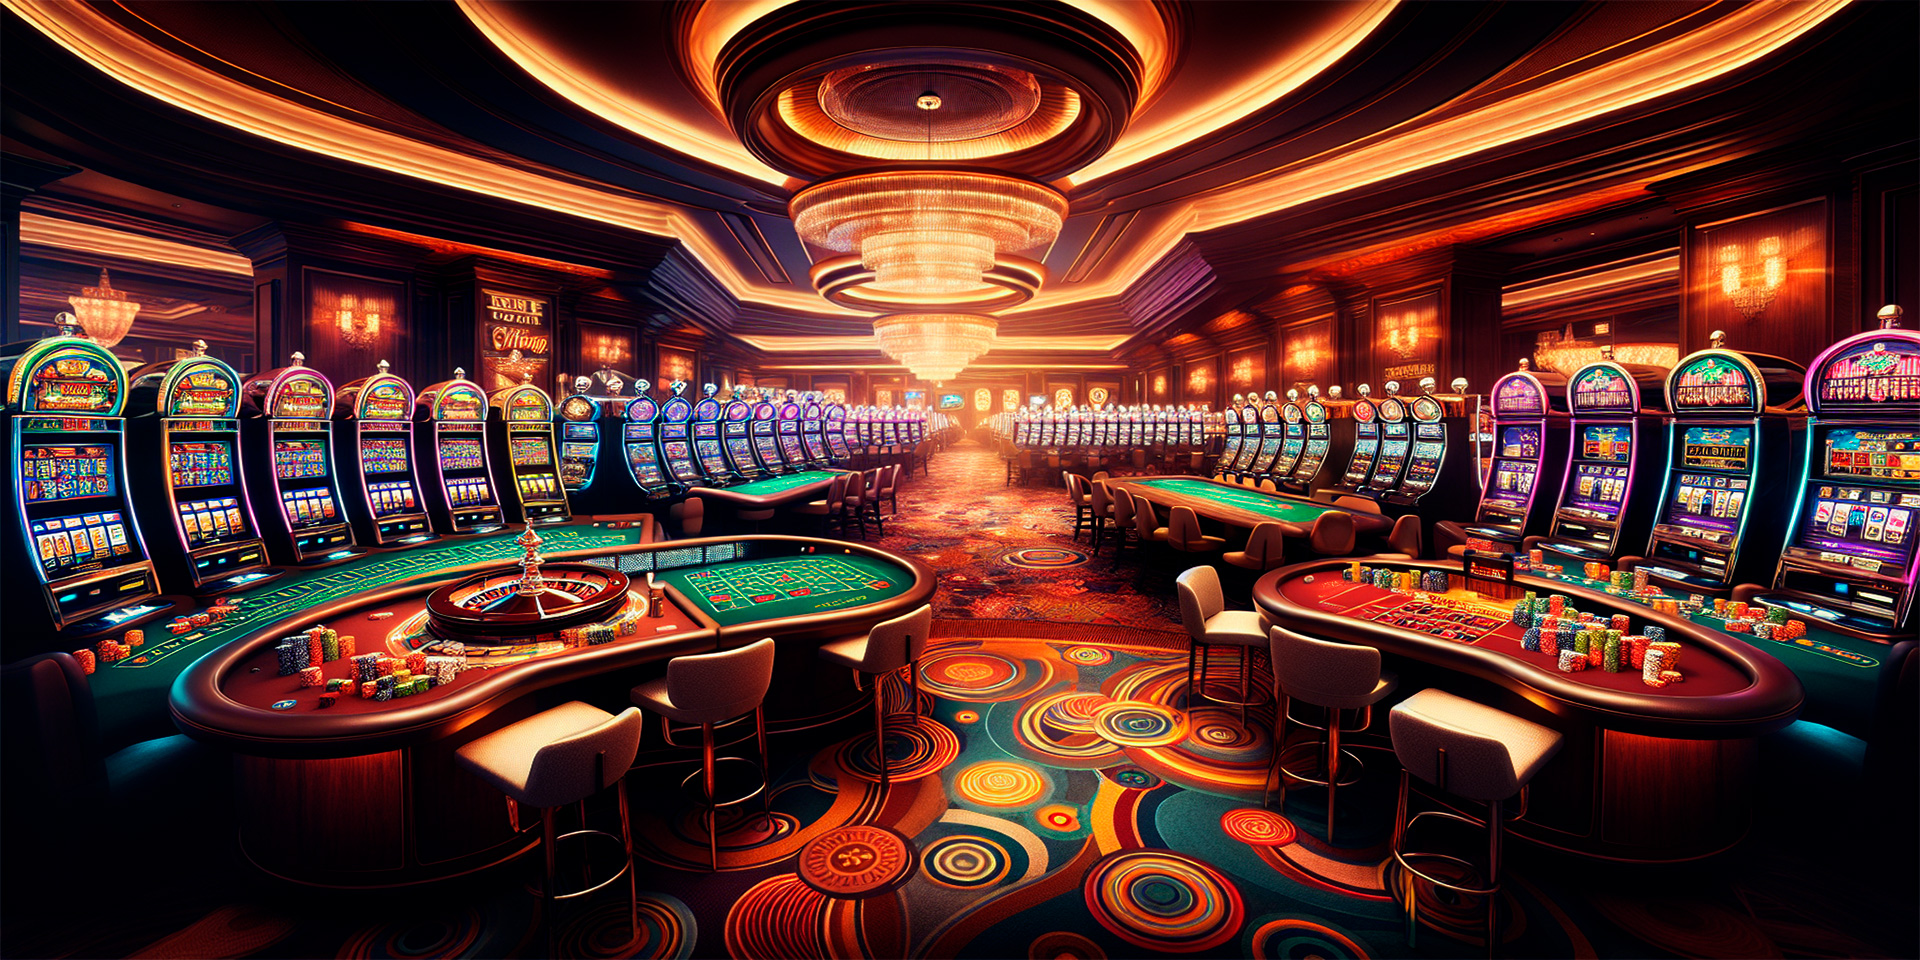 World of casinos